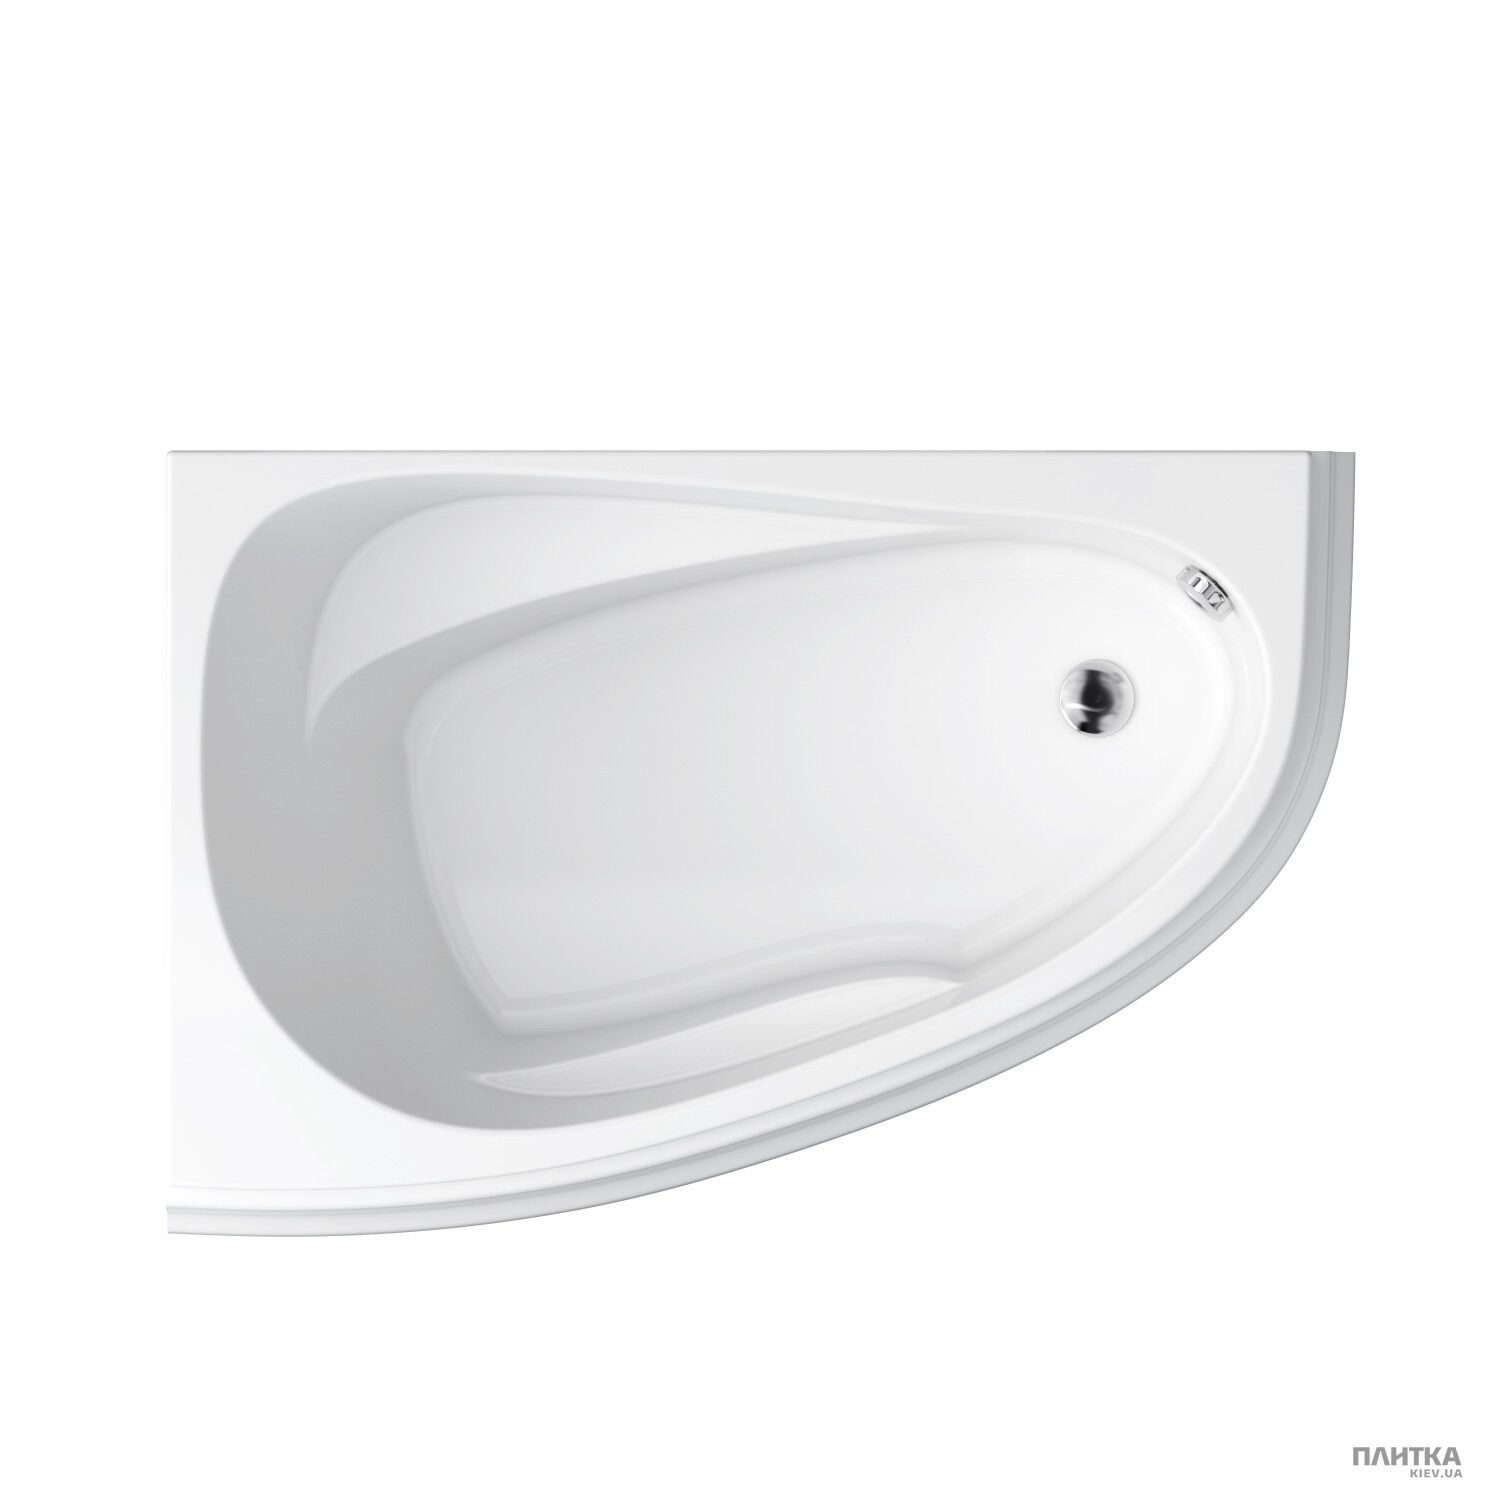 Акрилова ванна Cersanit Joanna New 140x90 см ліва, асиметрична білий